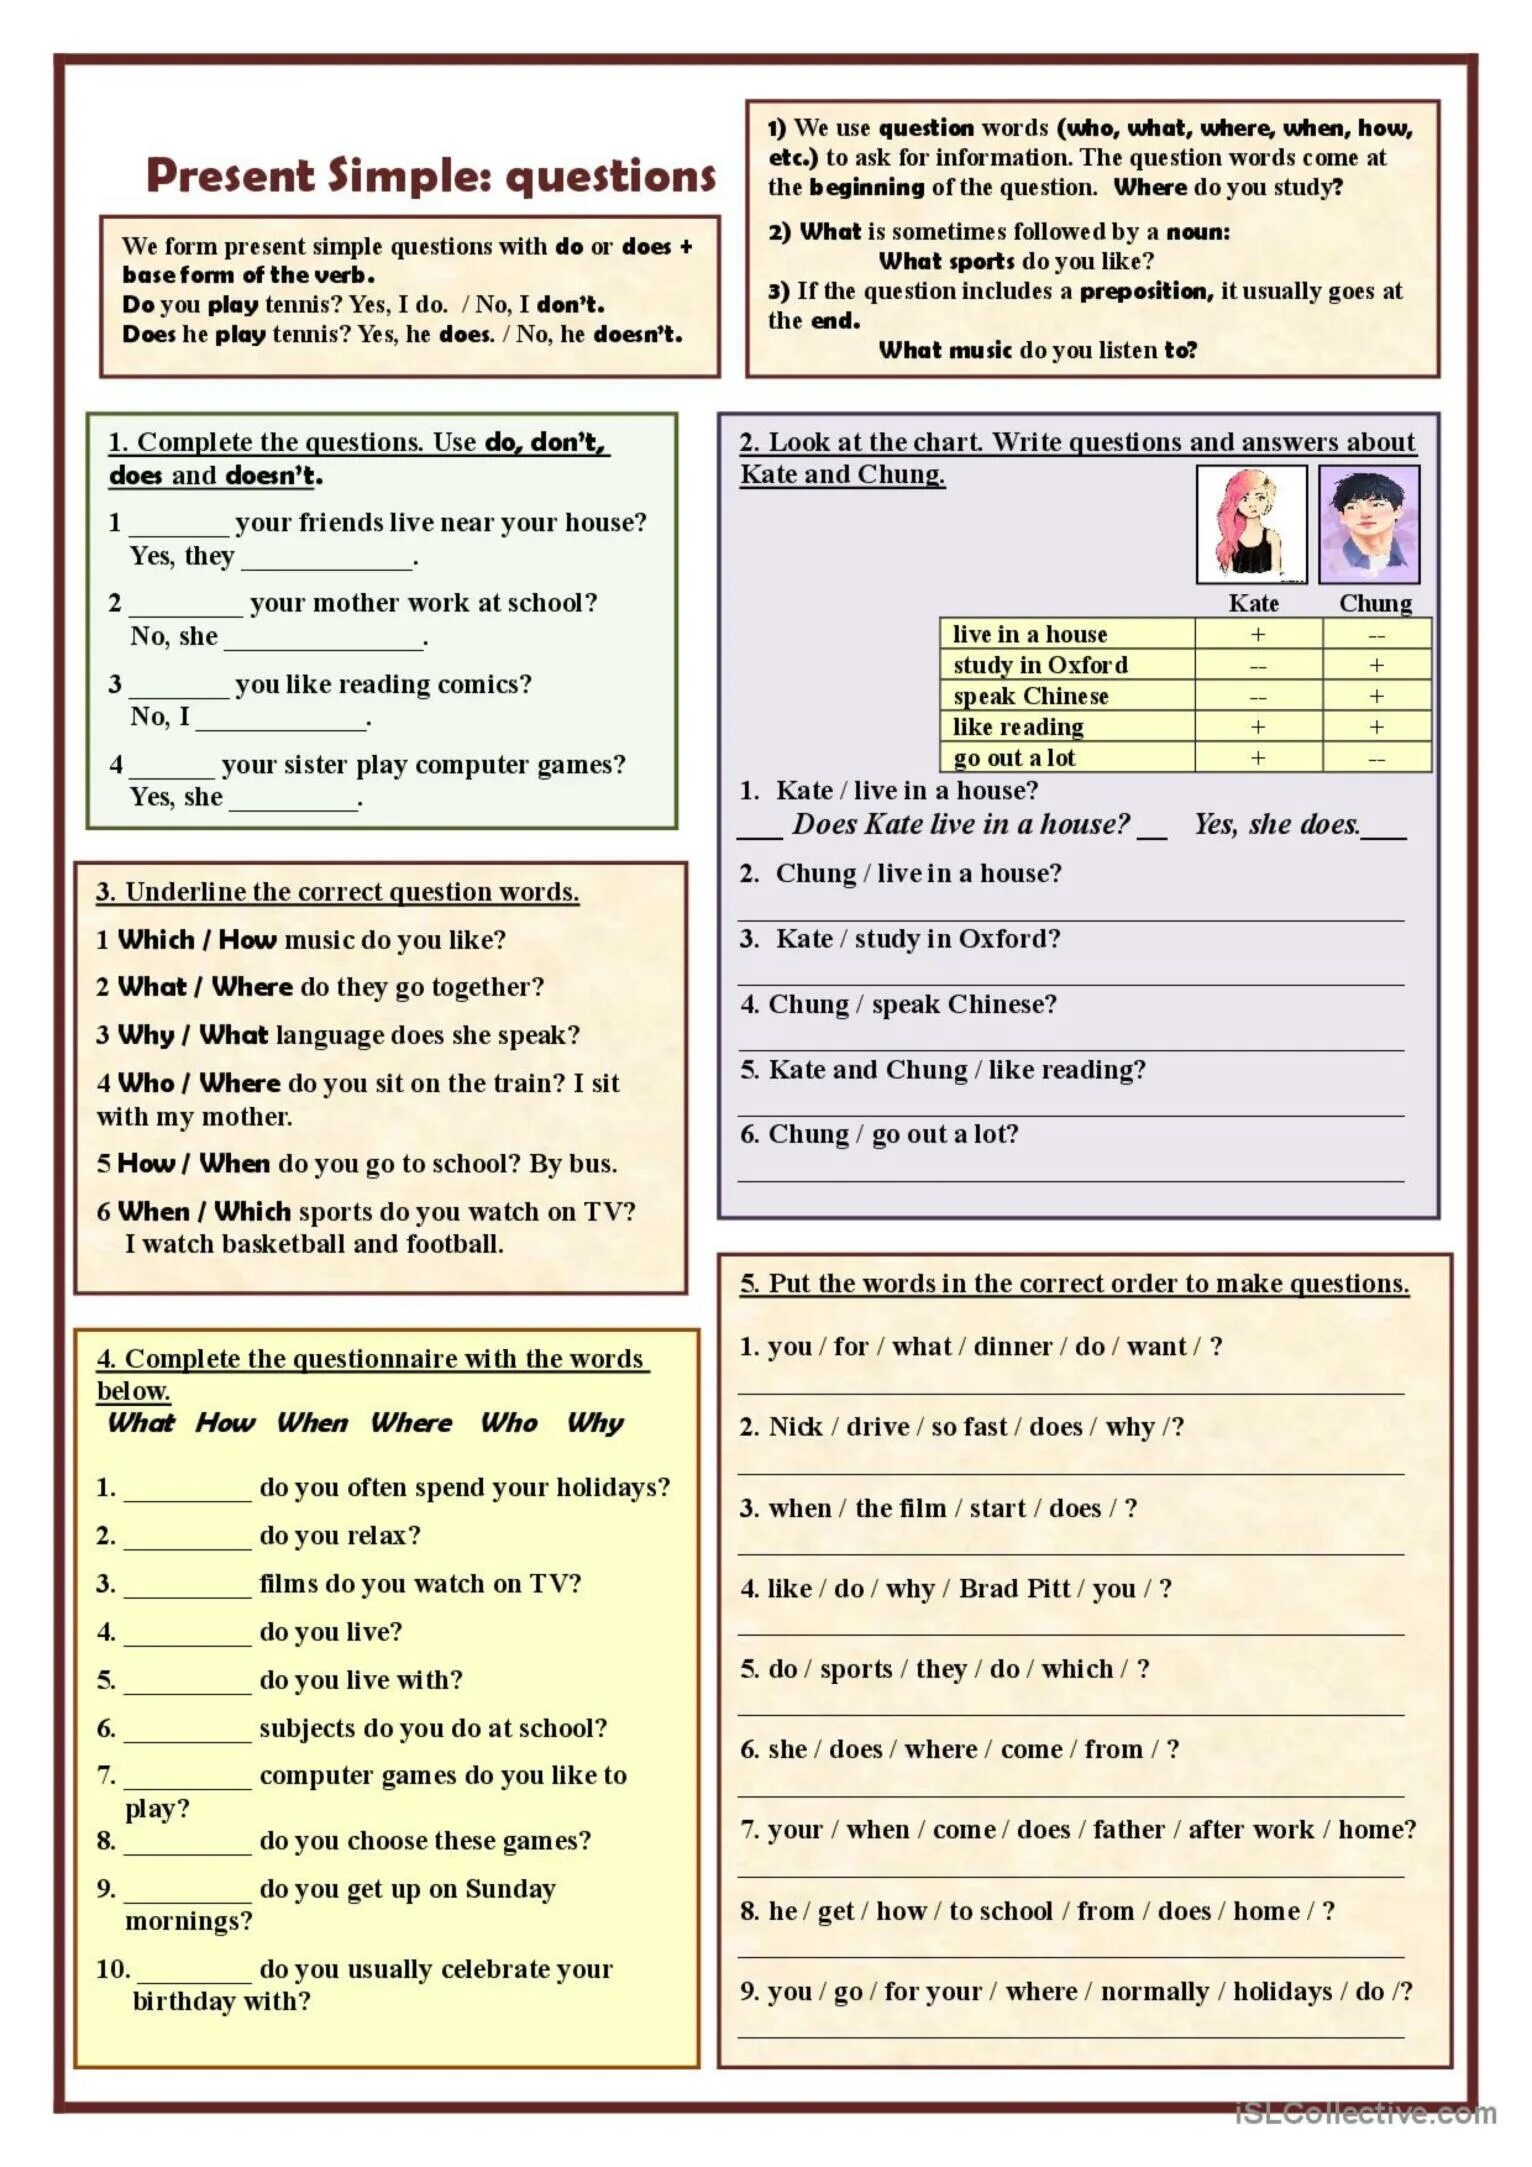 Present simple вопросы Worksheets. Общий вопрос в английском Worksheet. Специальные вопросы Worksheets. General questions в английском Worksheets.